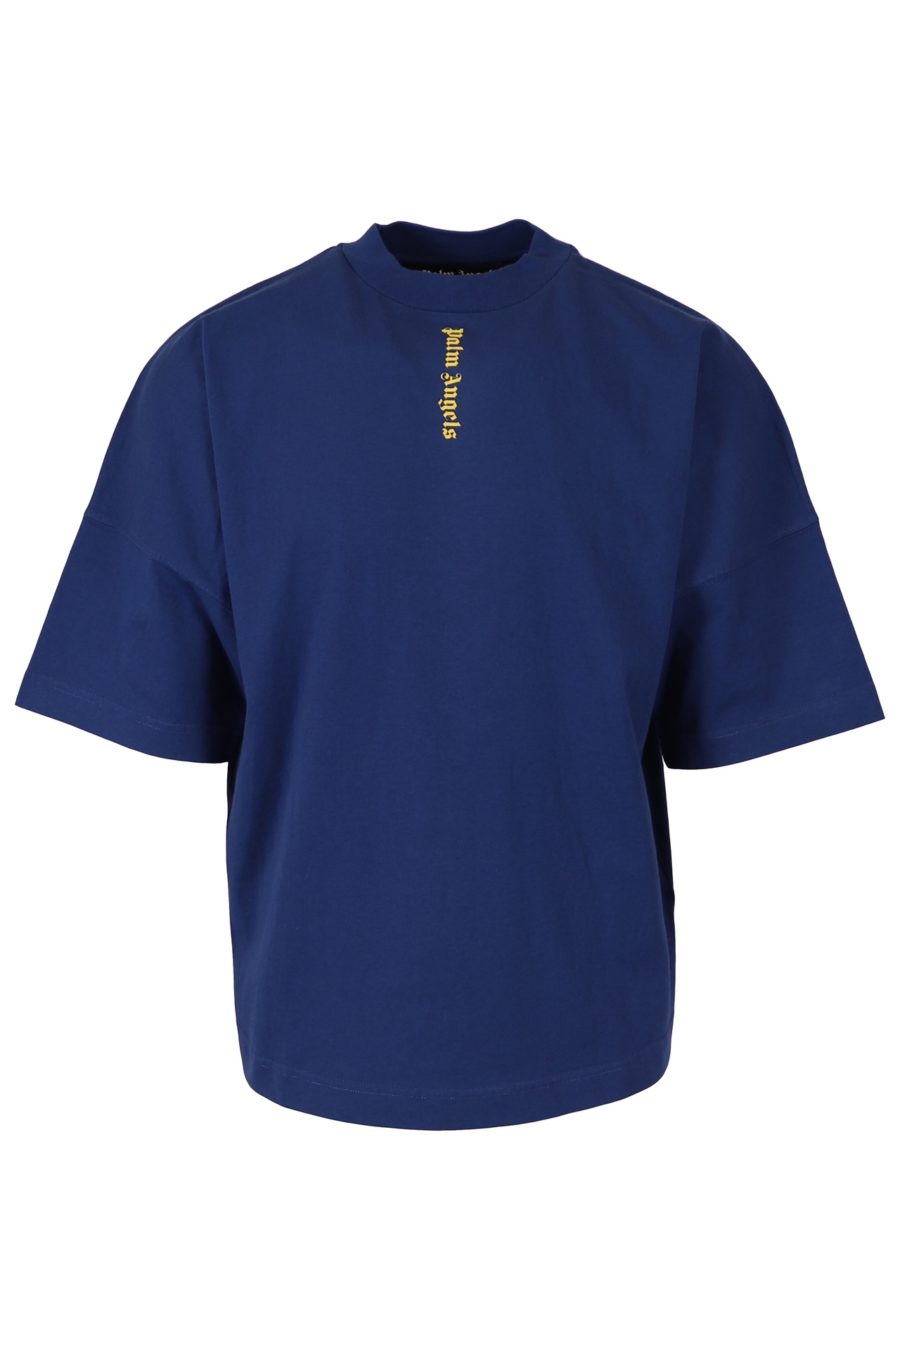 Camiseta Palm Angels azul con logo amarillo vertical - 903bc0ec2a8179621e1724c2dbadc8330e1ccbd6